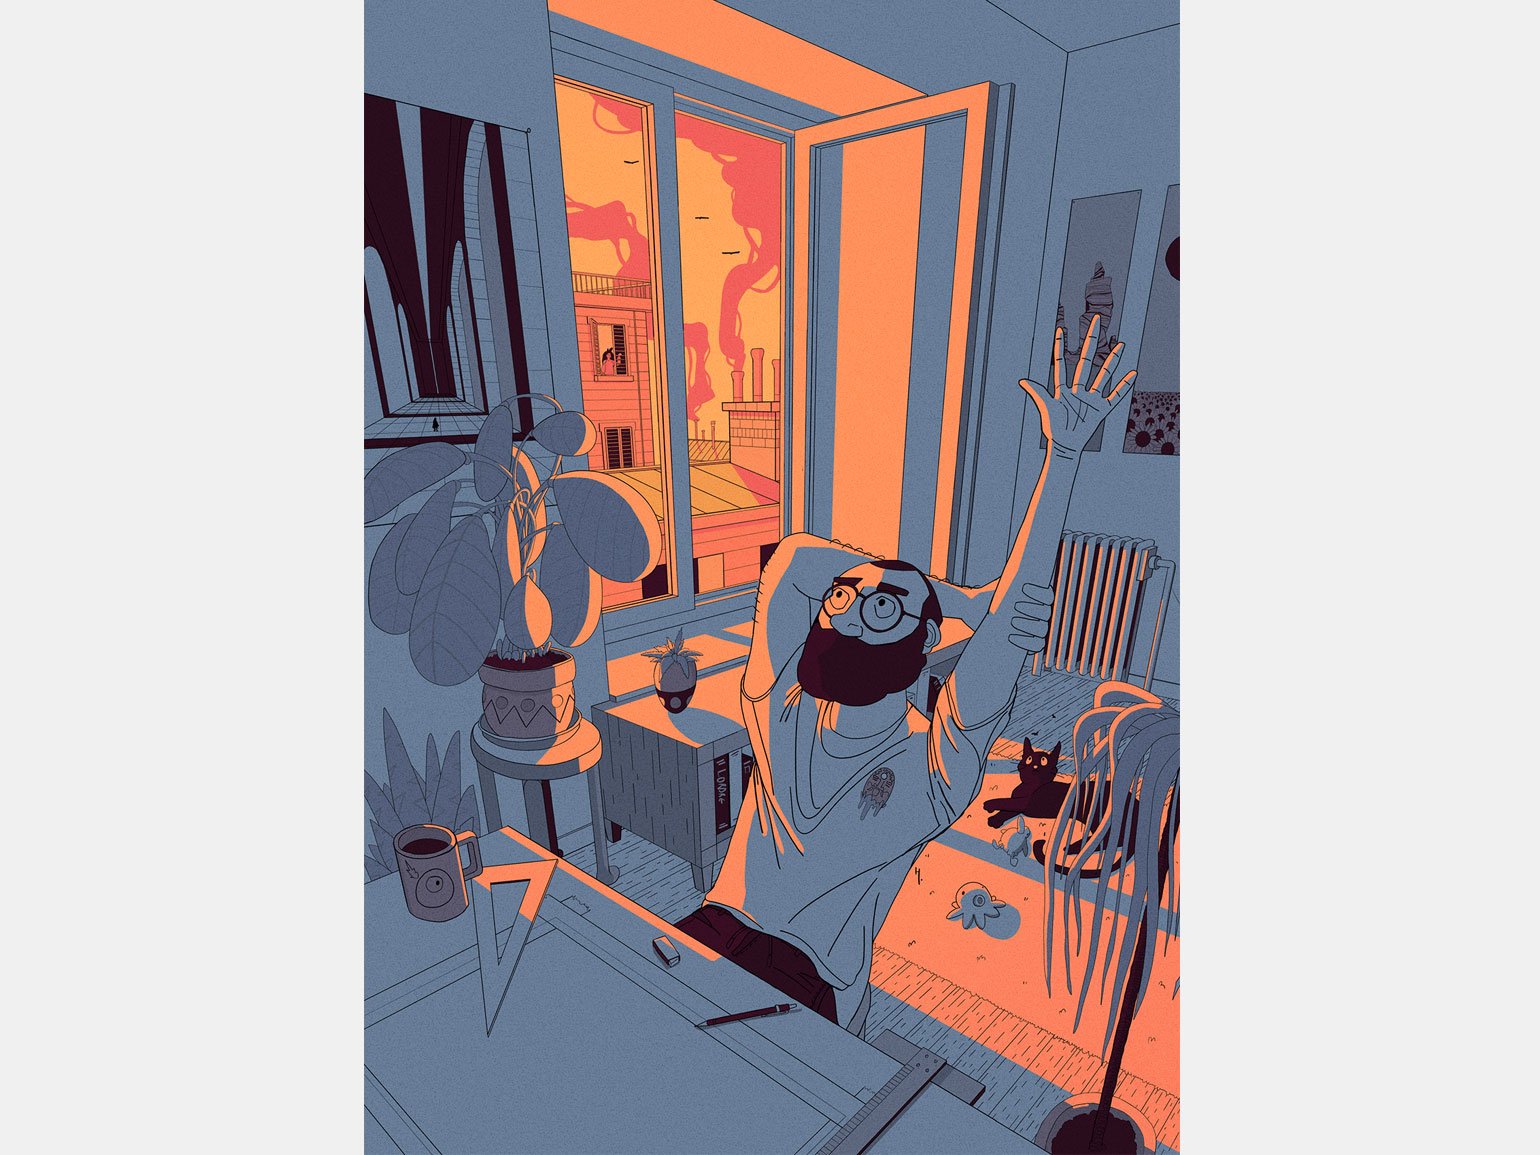 иллюстрация для журнала мужчина-архитектор потягивается вечером в комнате с котом